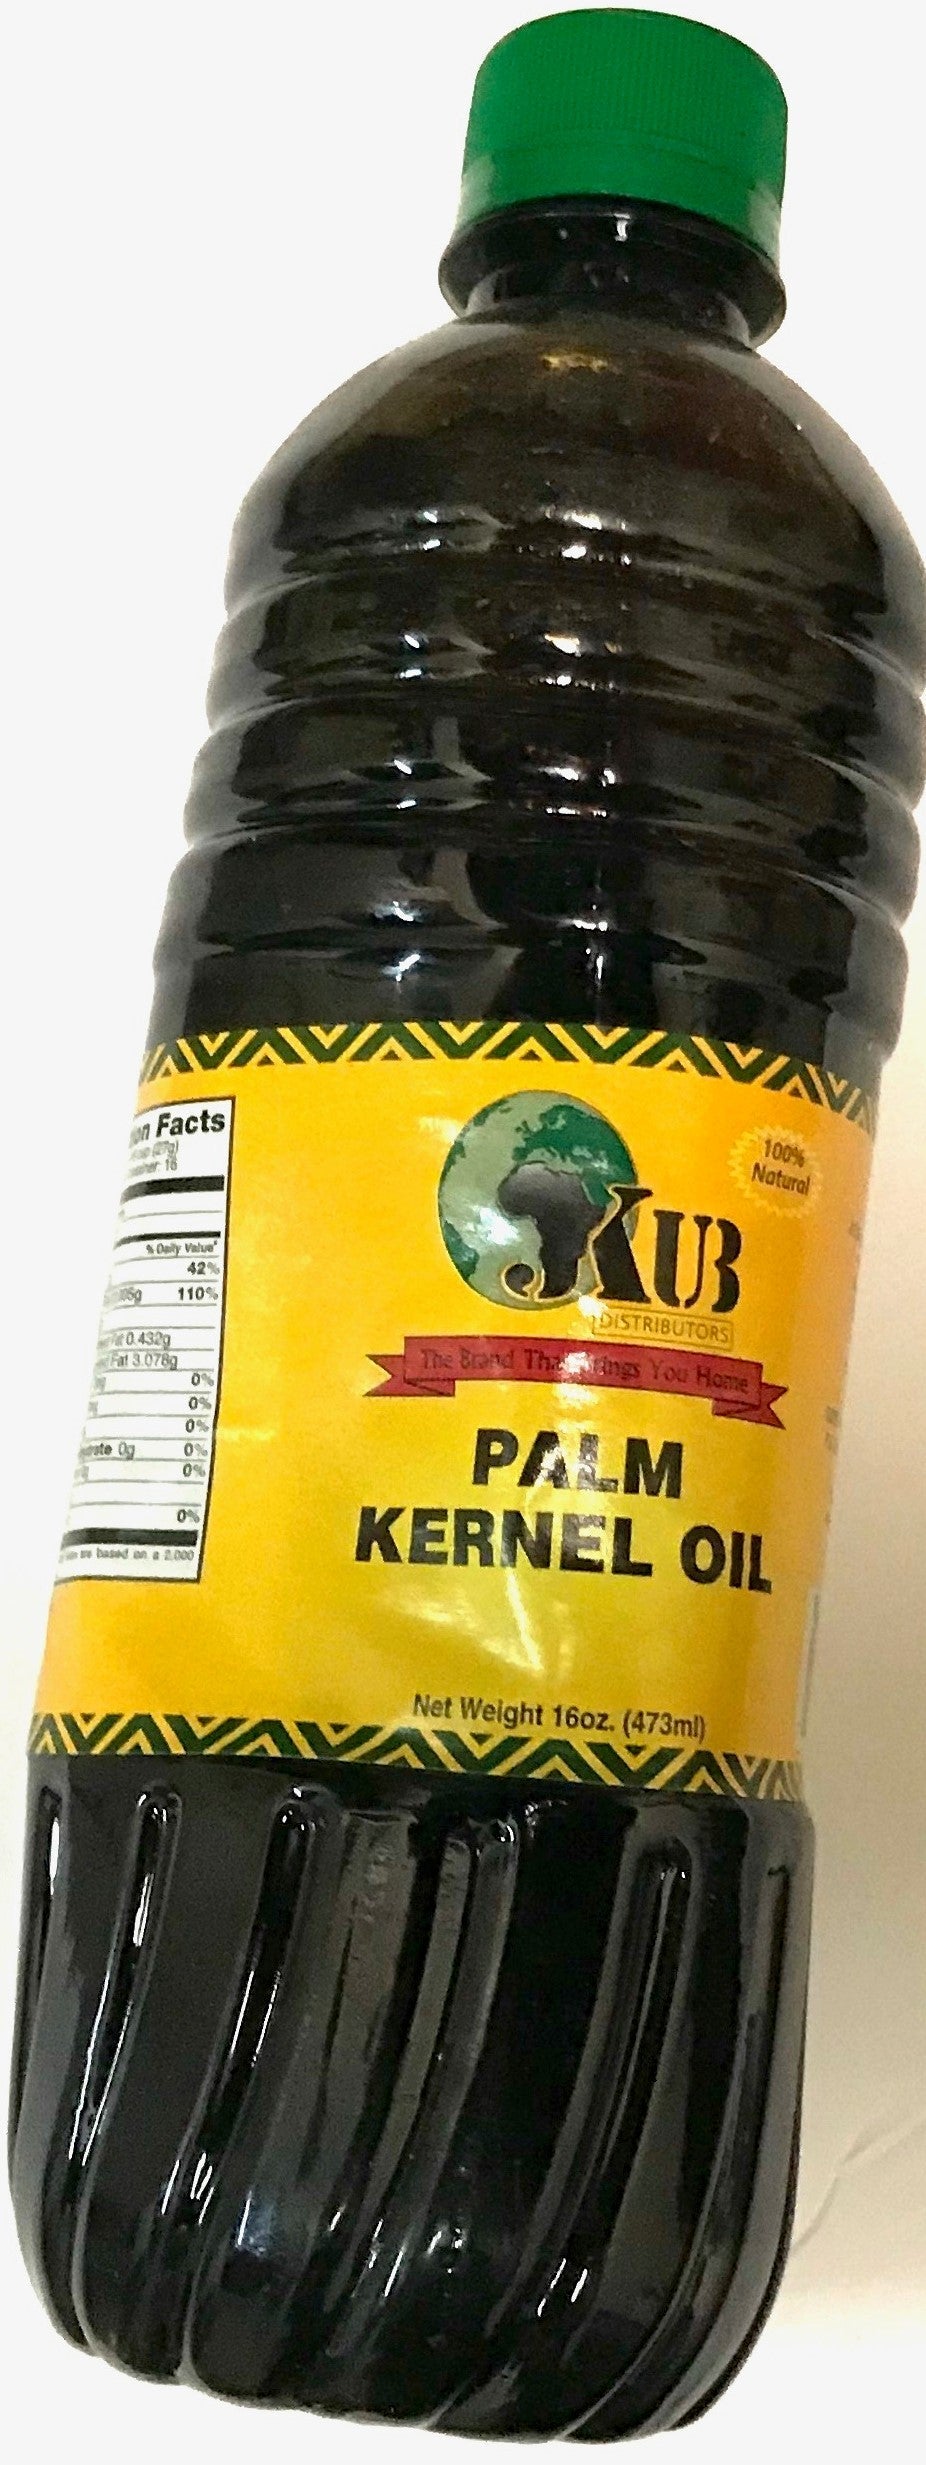 Jkub Palm Kernel Oil, 16oz | AFRS322